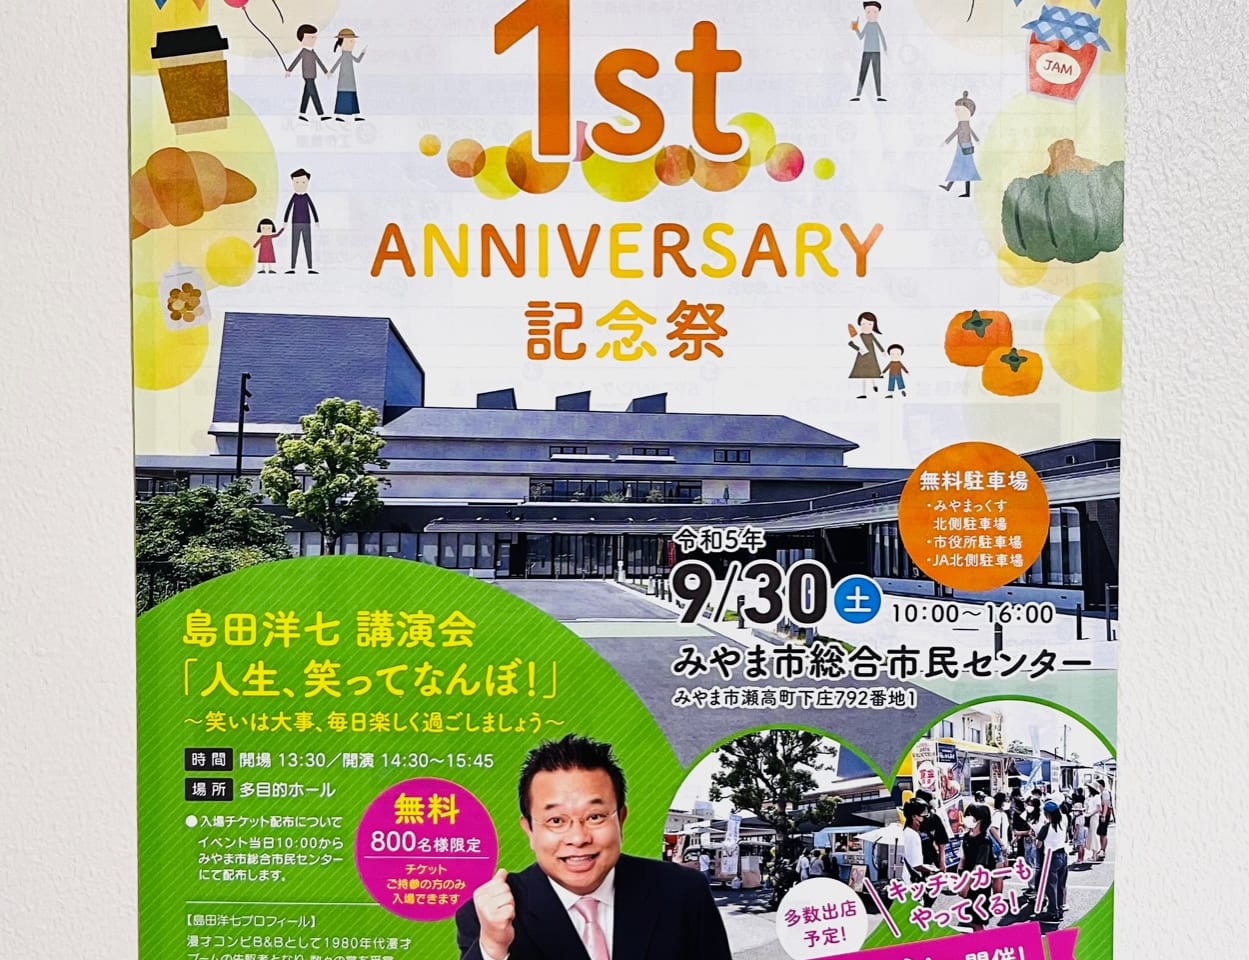 みやま市総合市民センターMIYAMAXで開催される開館1周年記念イベント「1st anniversary 記念祭」